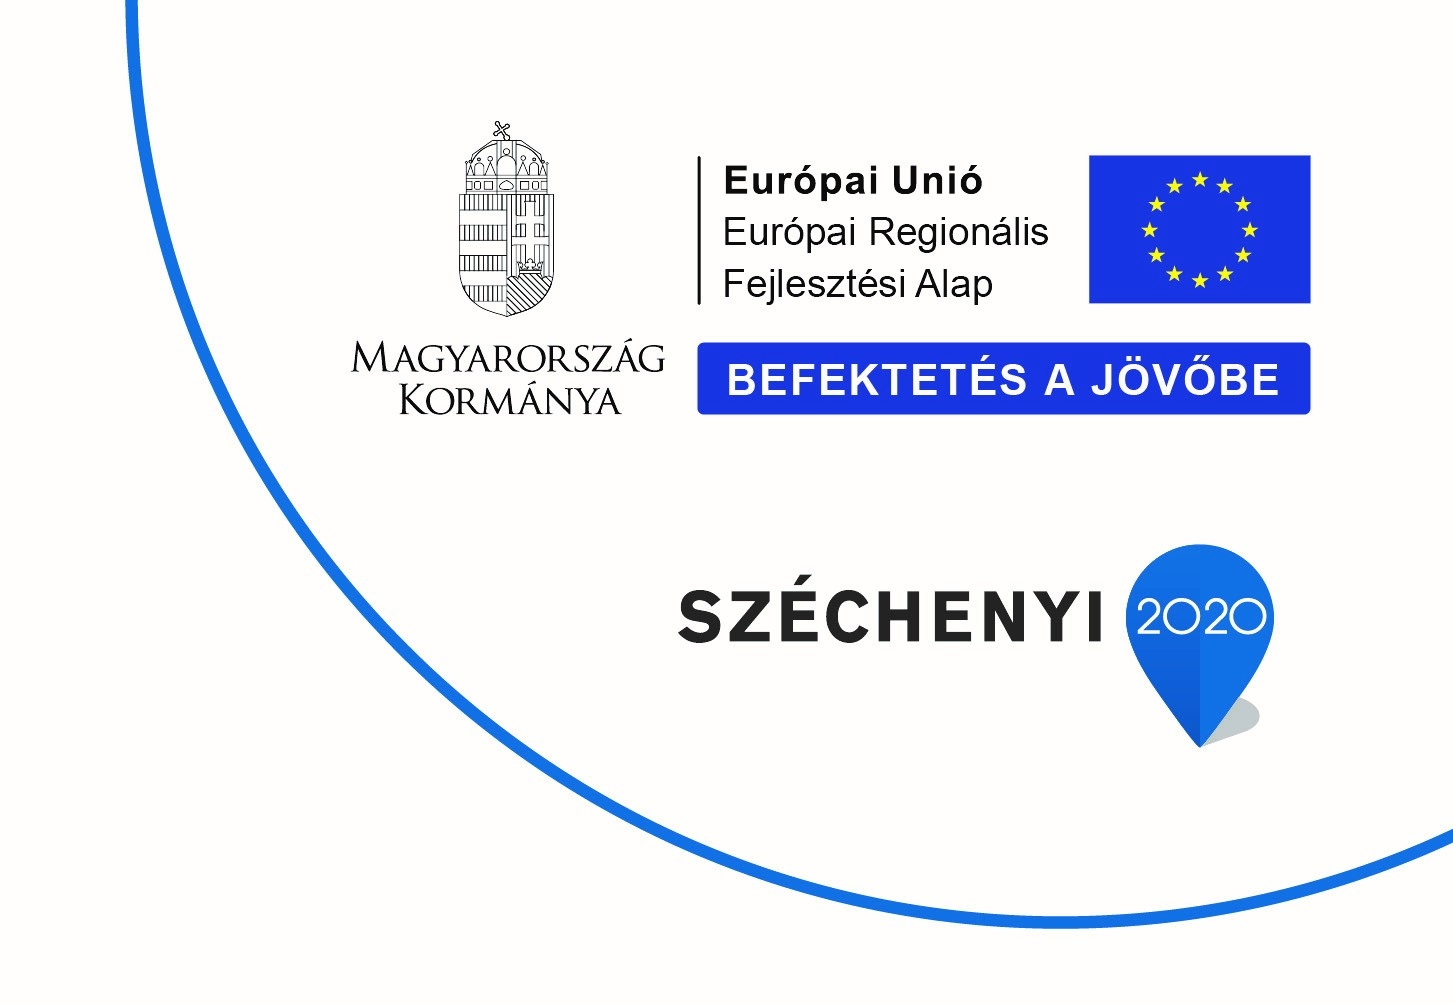 Európai Unió Európai Regionális Fejlesztési Alap - Befektetés a jövőbe - Széchenyi 2020